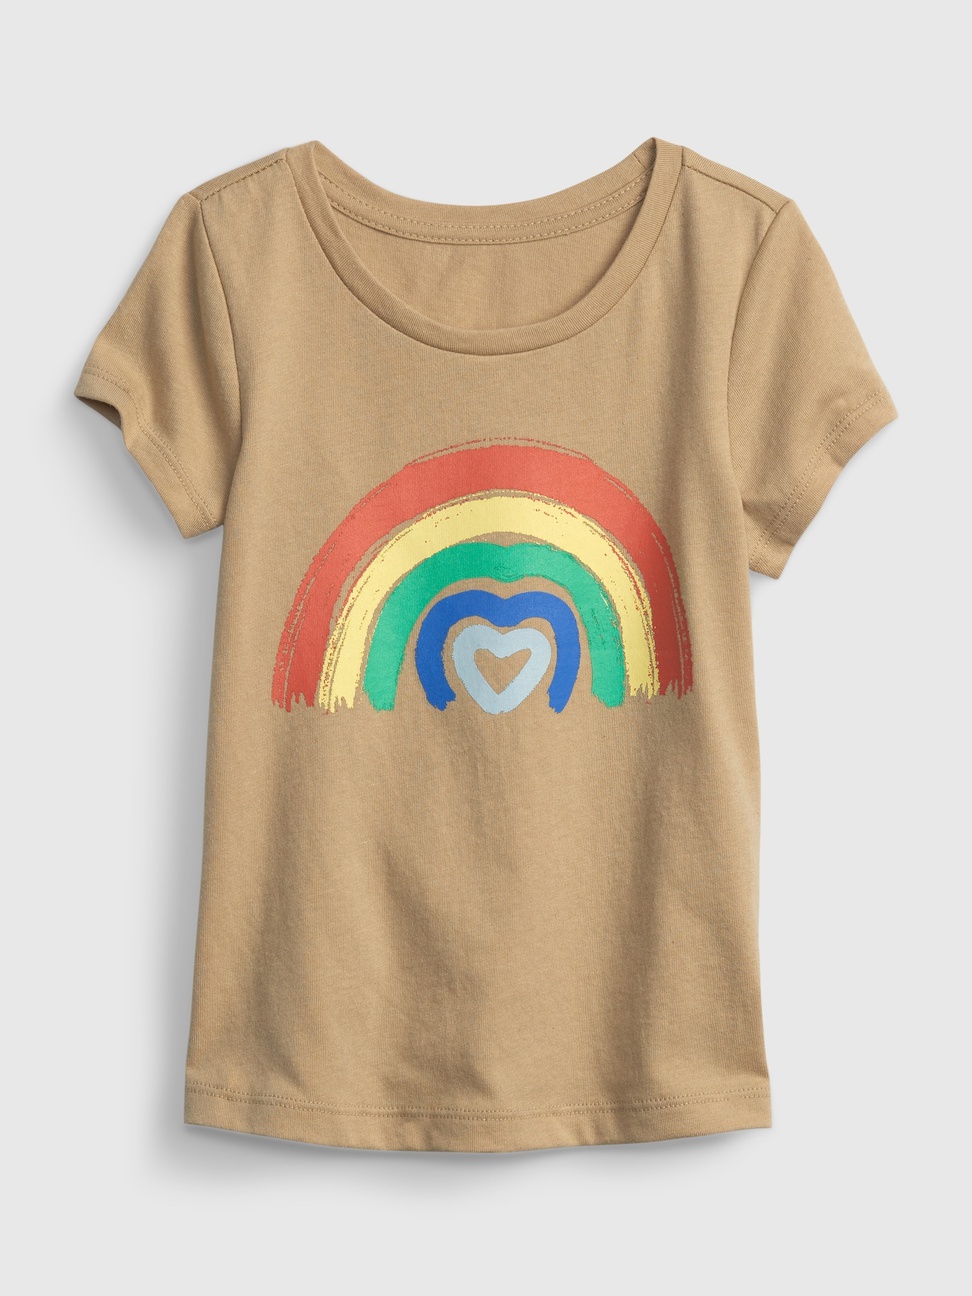 女幼童裝|純棉印花短袖T恤 布萊納系列-彩虹圖案